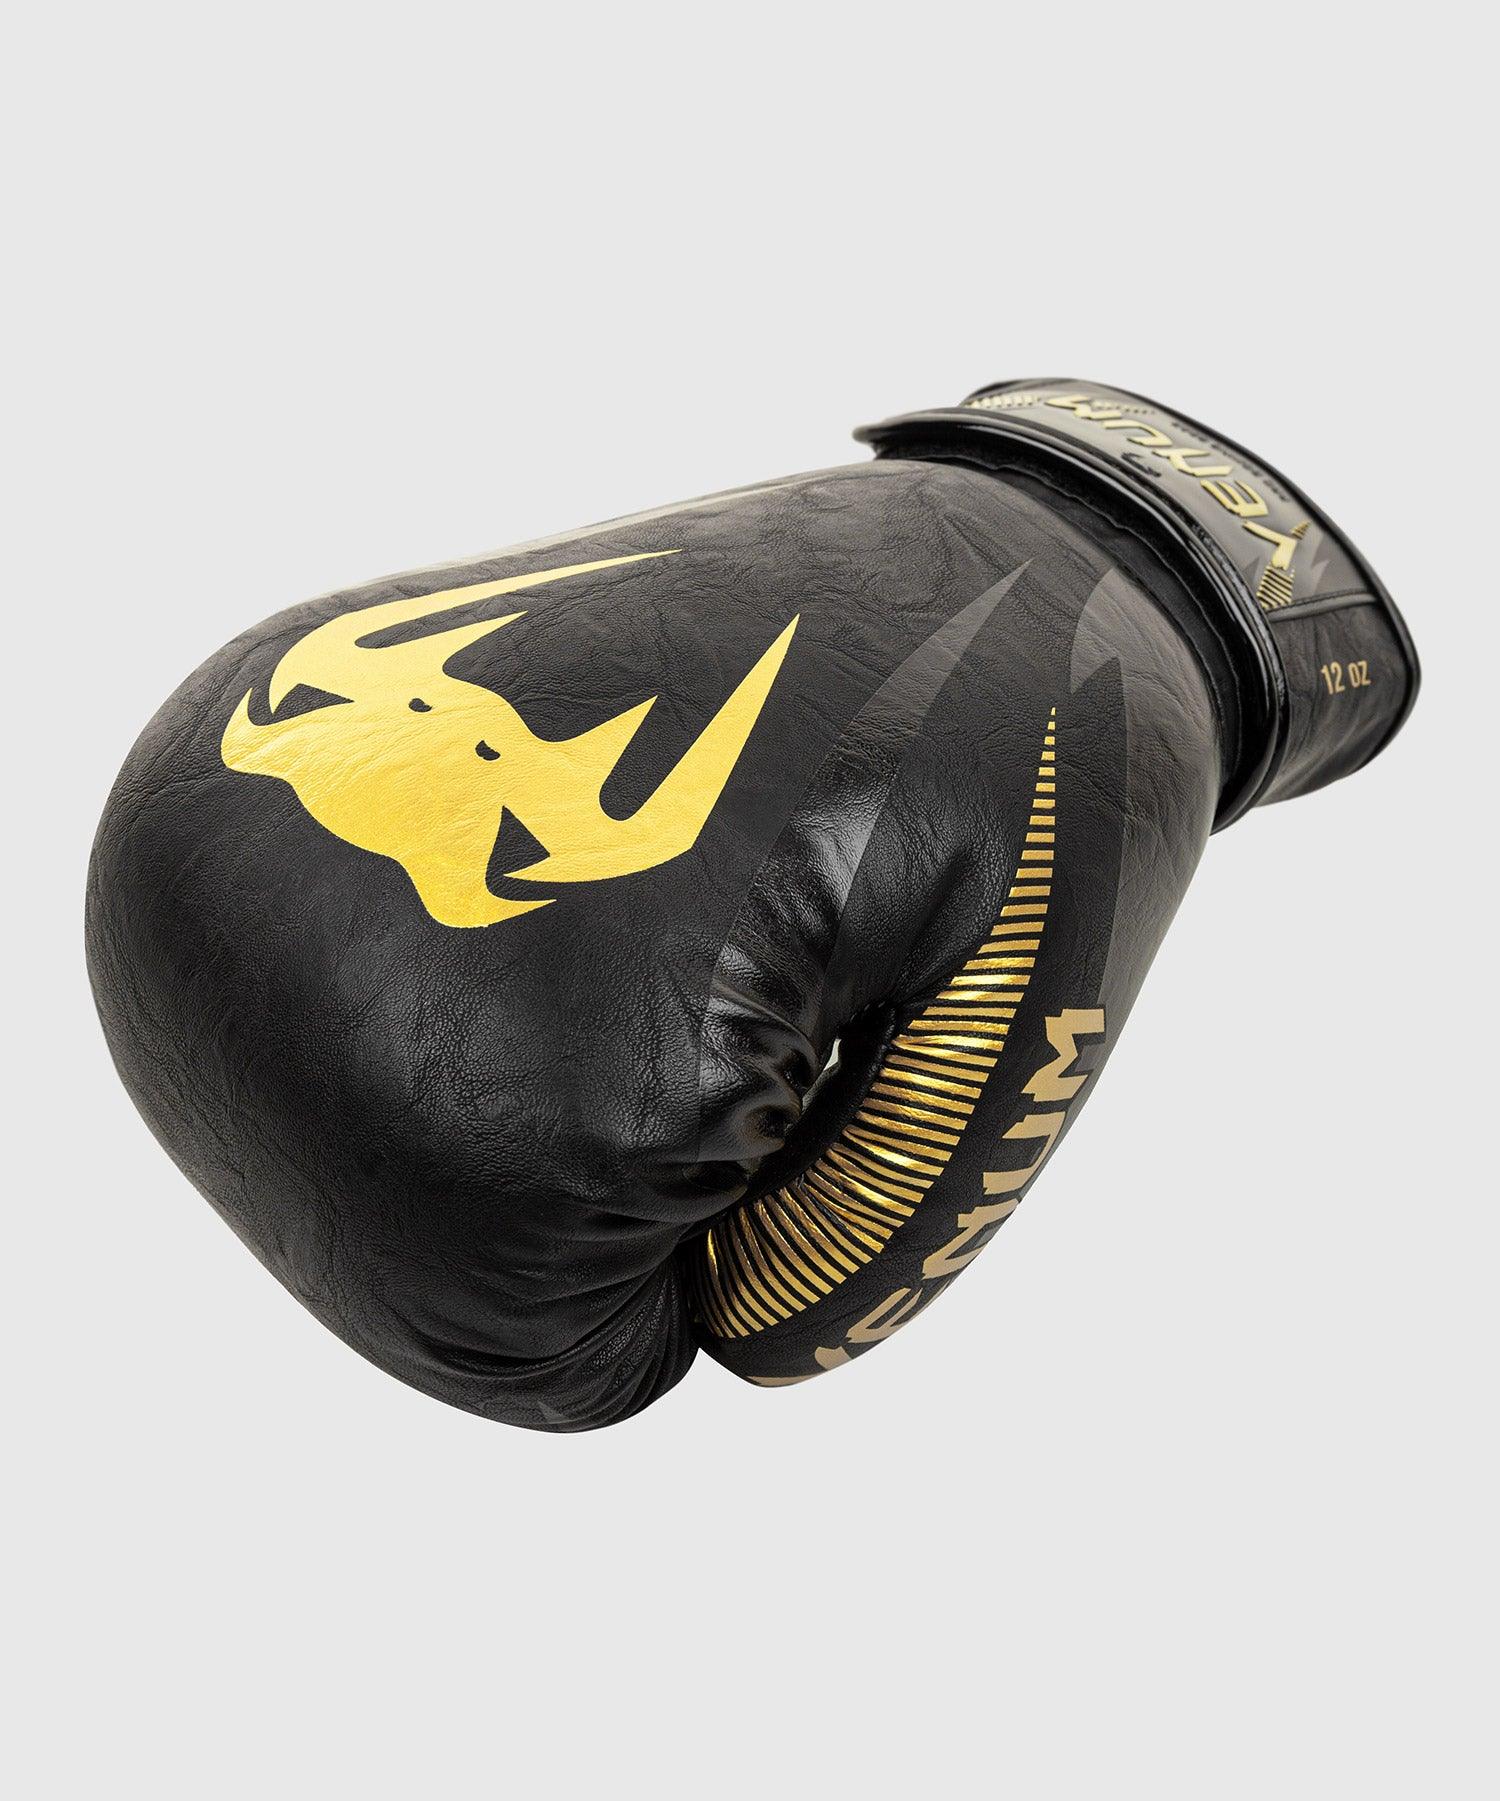 Venum Impact Boxing Gloves - Gold/Black - Venum